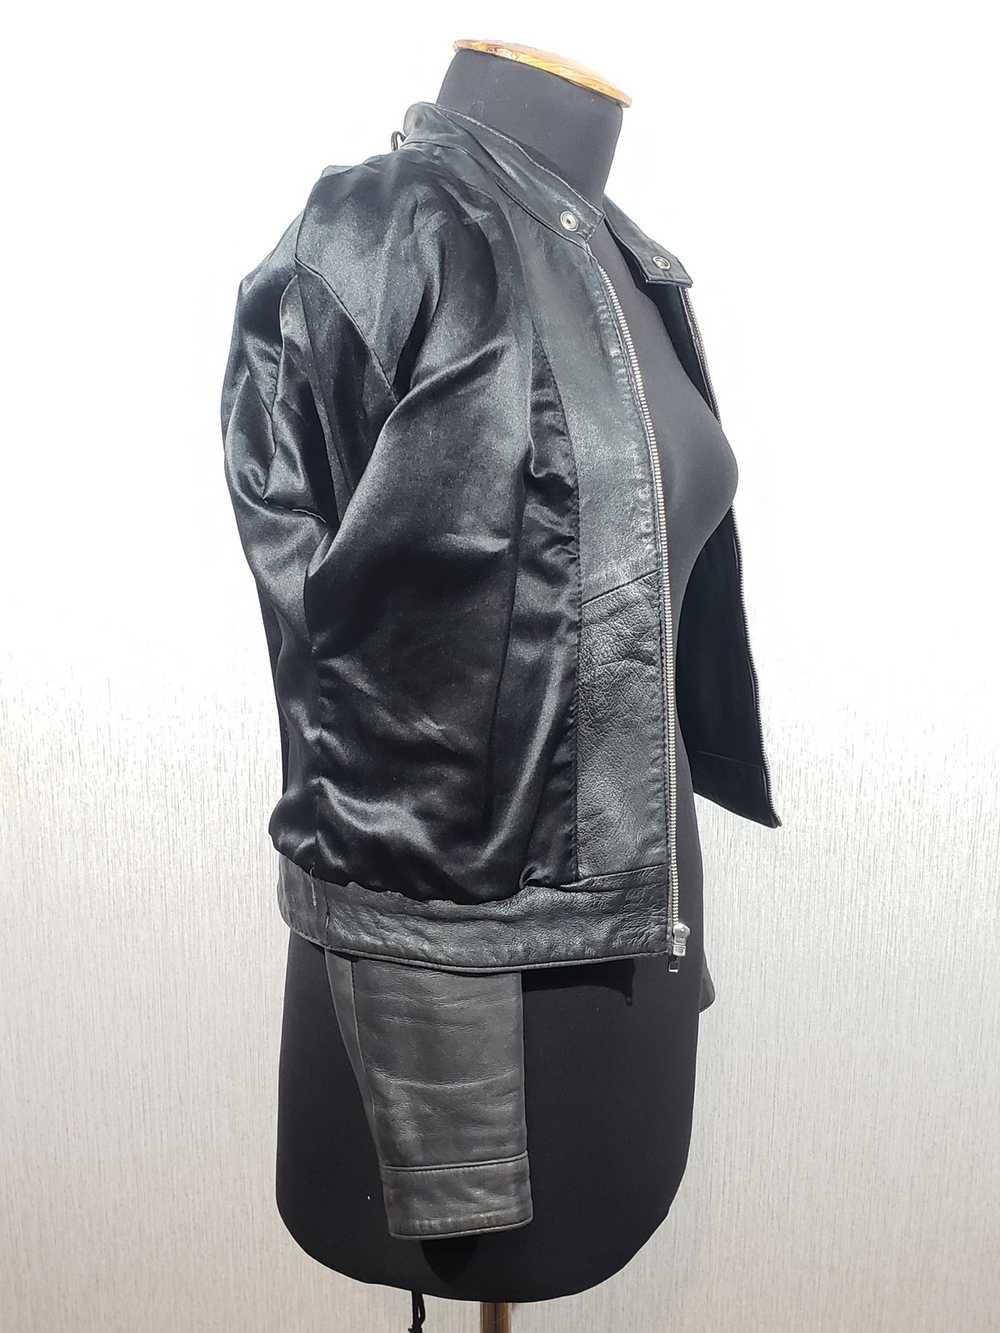 Designer × Leather Jacket Black women's sports ja… - image 7